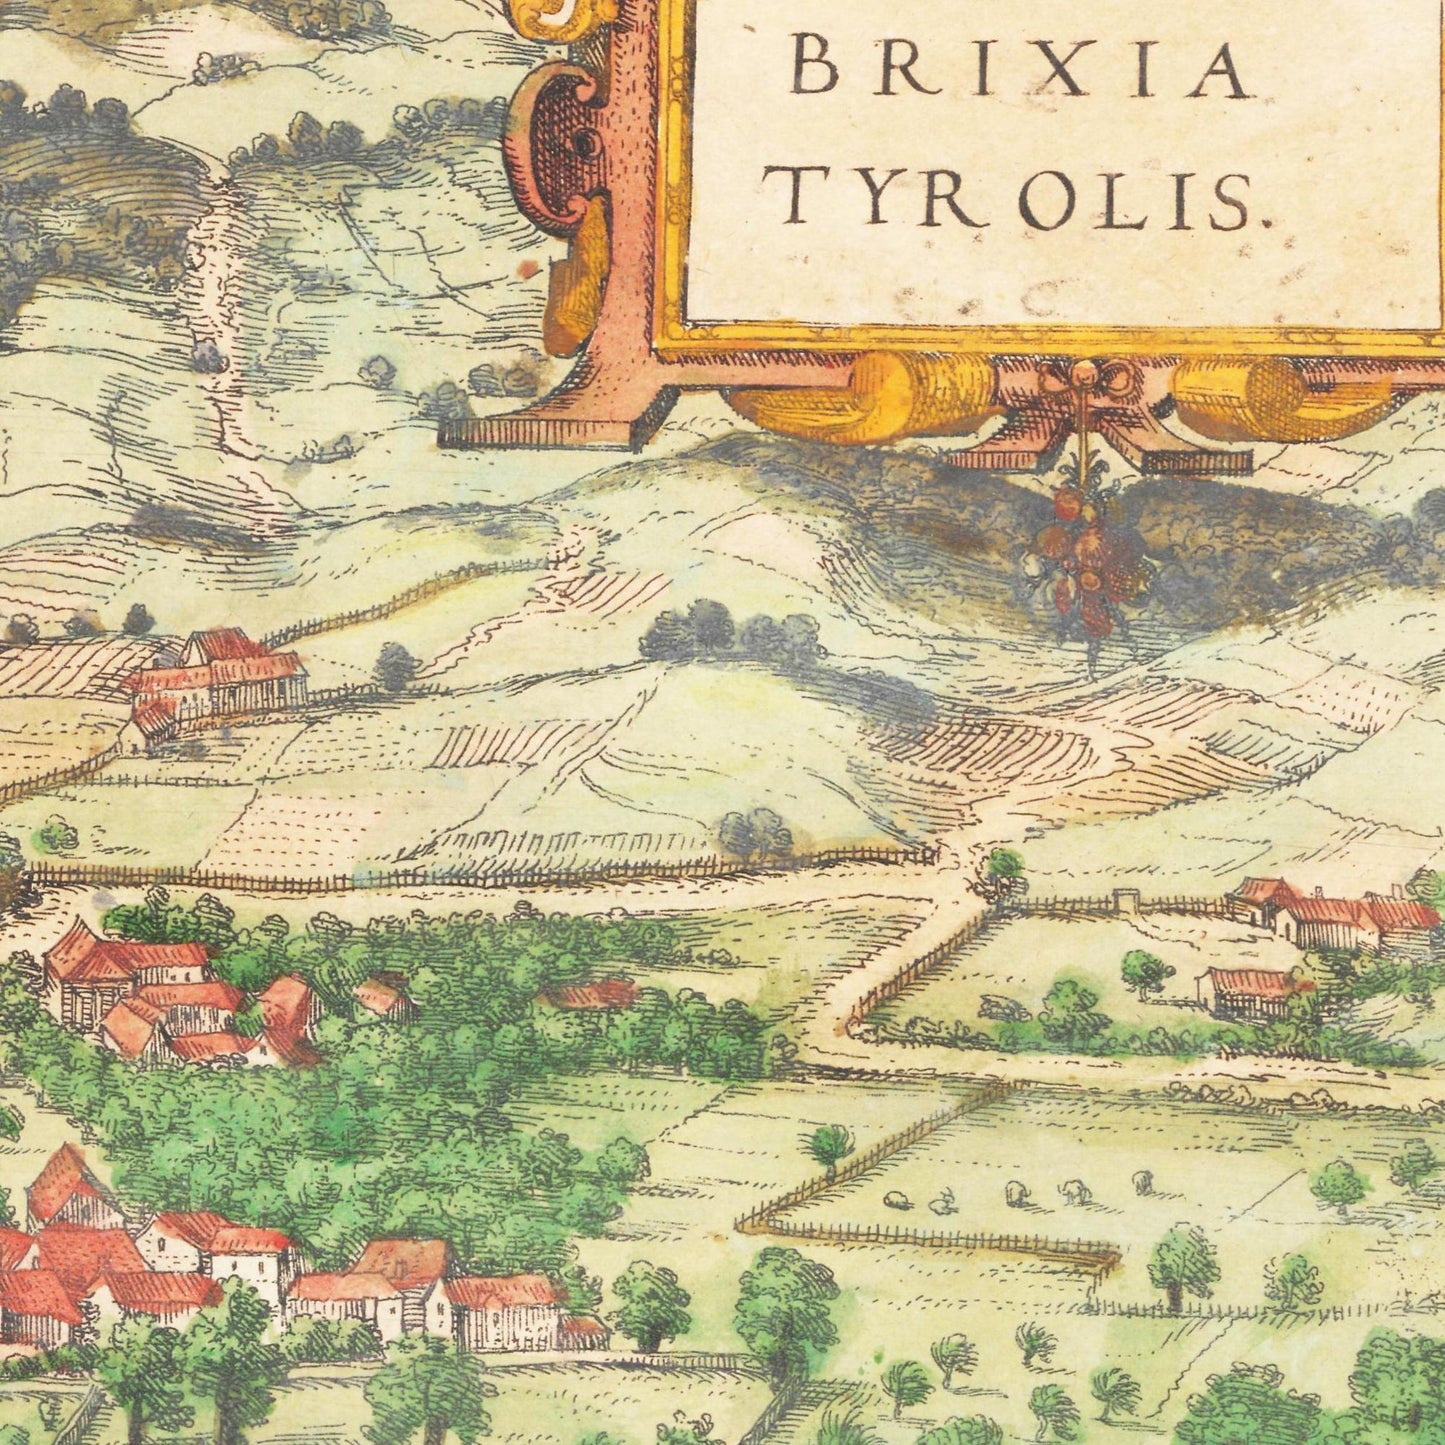 Historische Stadtansicht Brixen um 1592